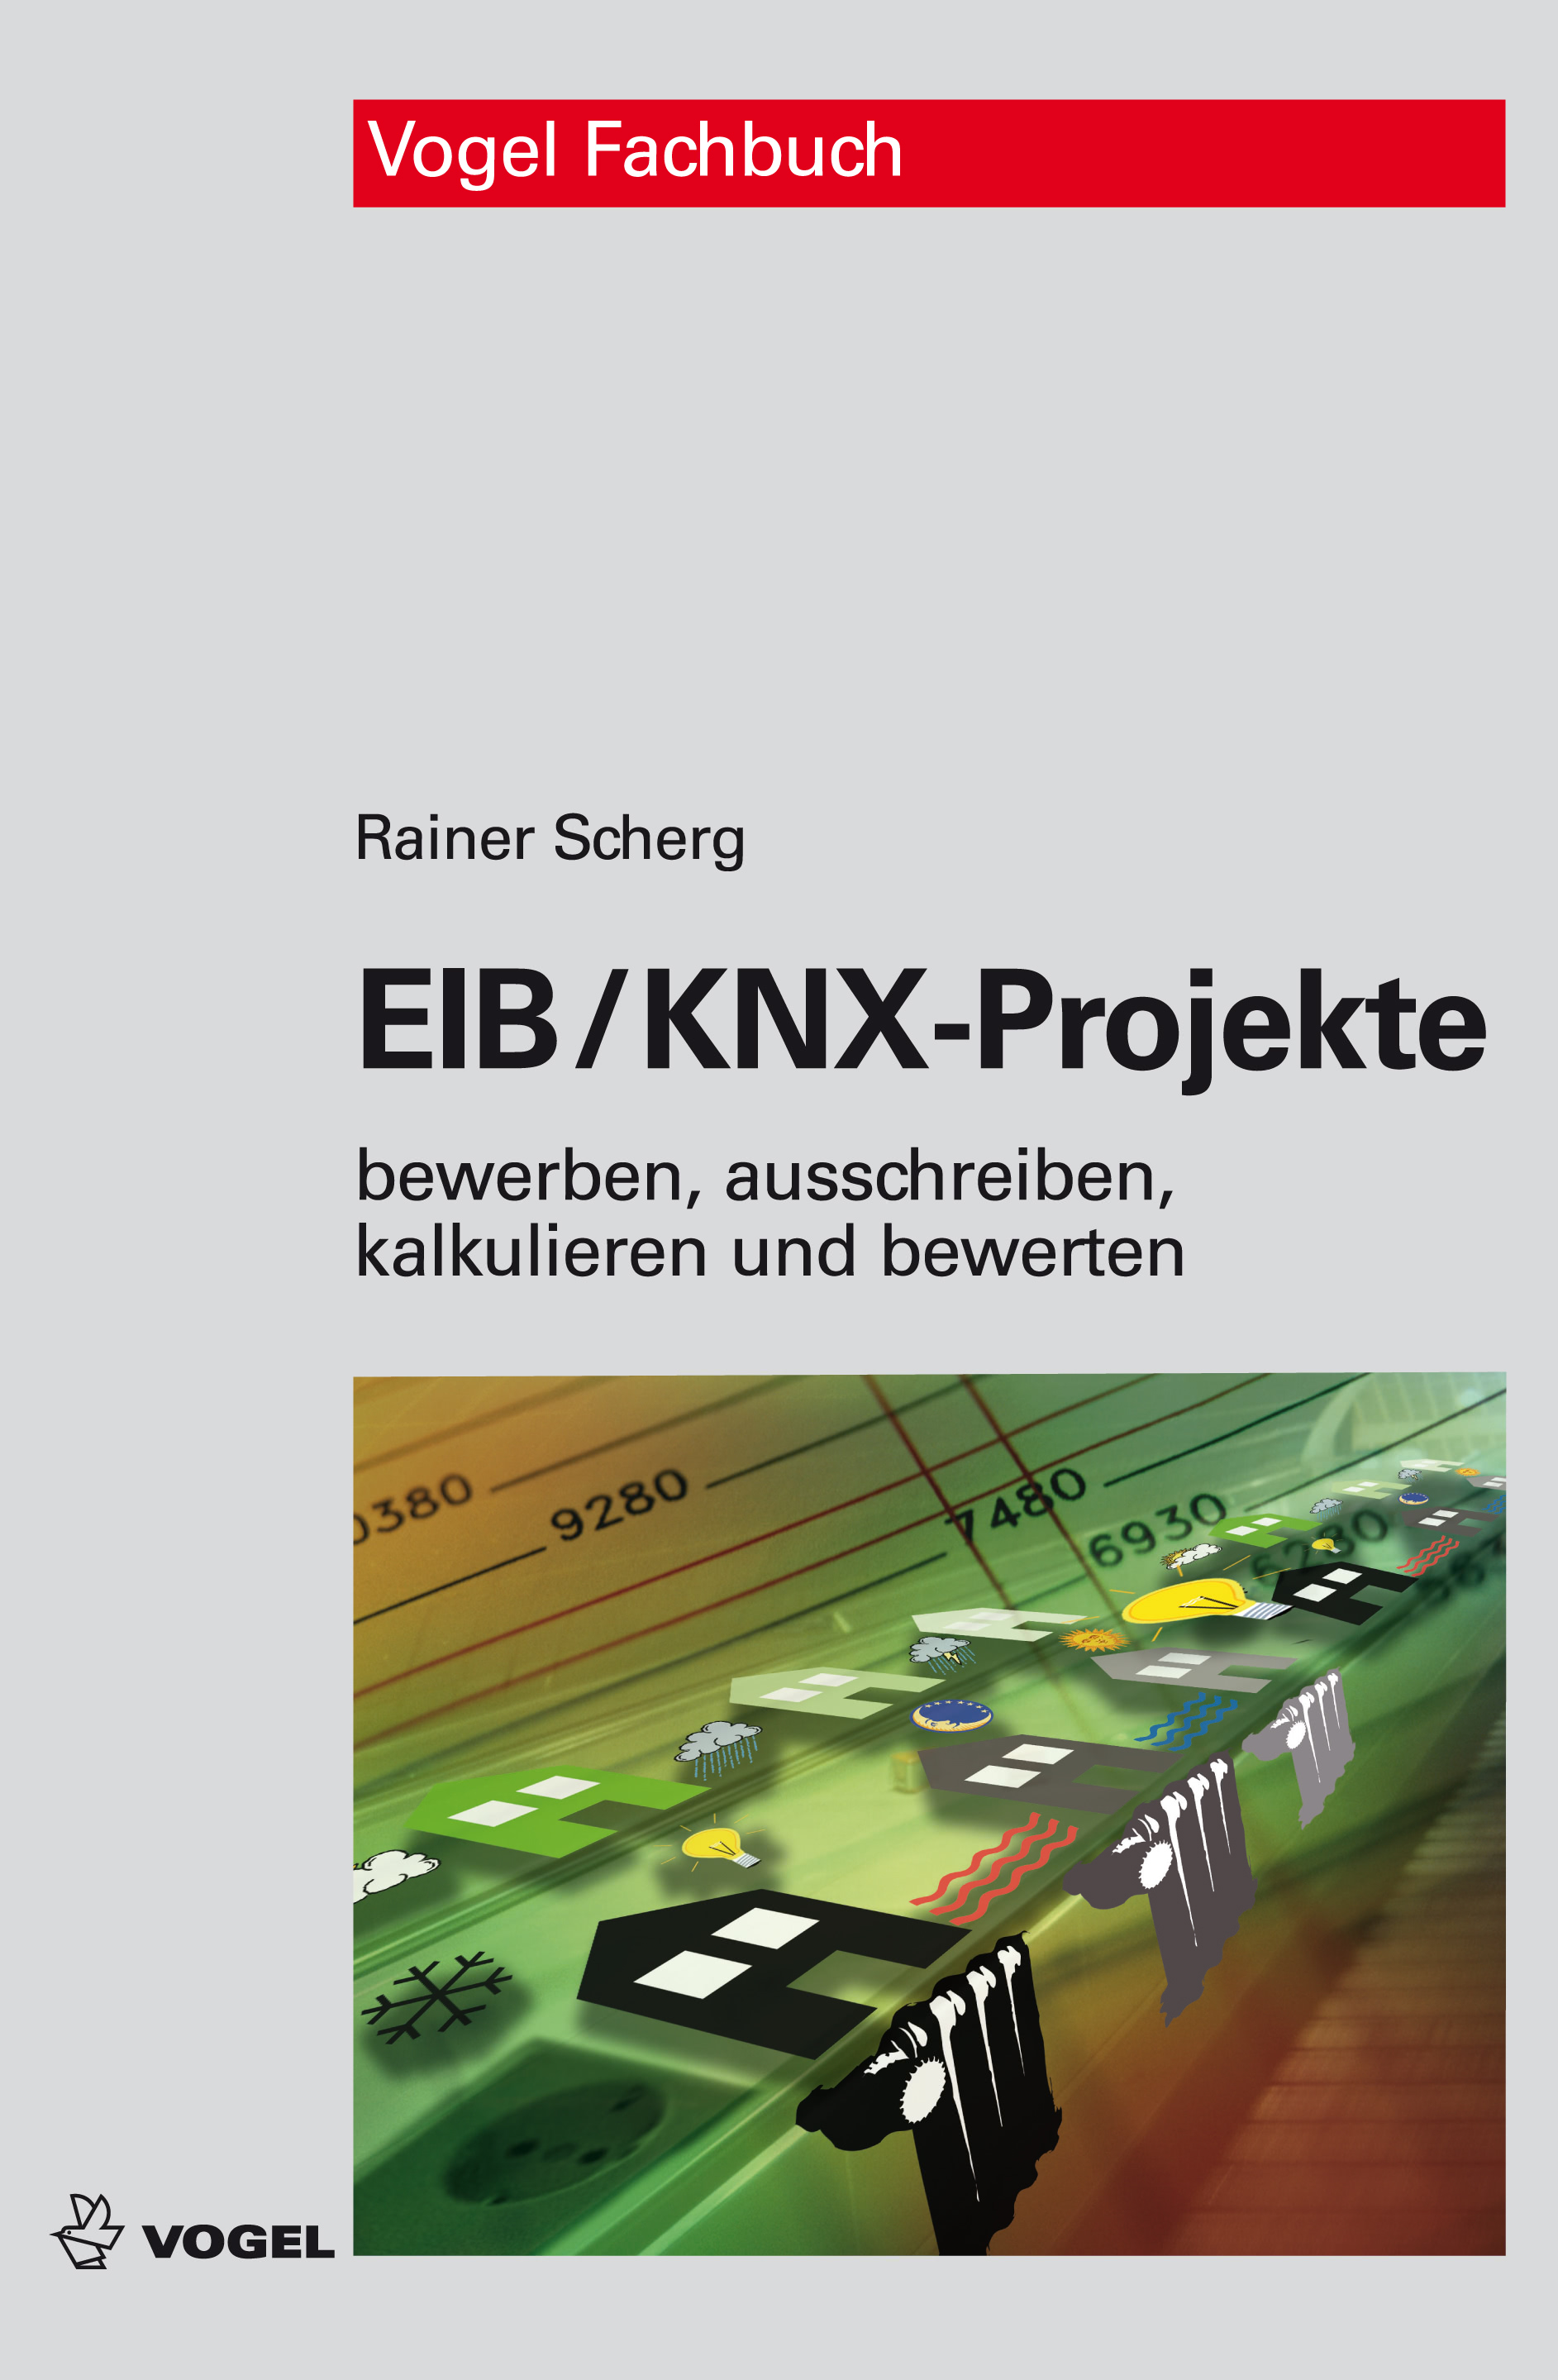 EIB/KNX-Projekte